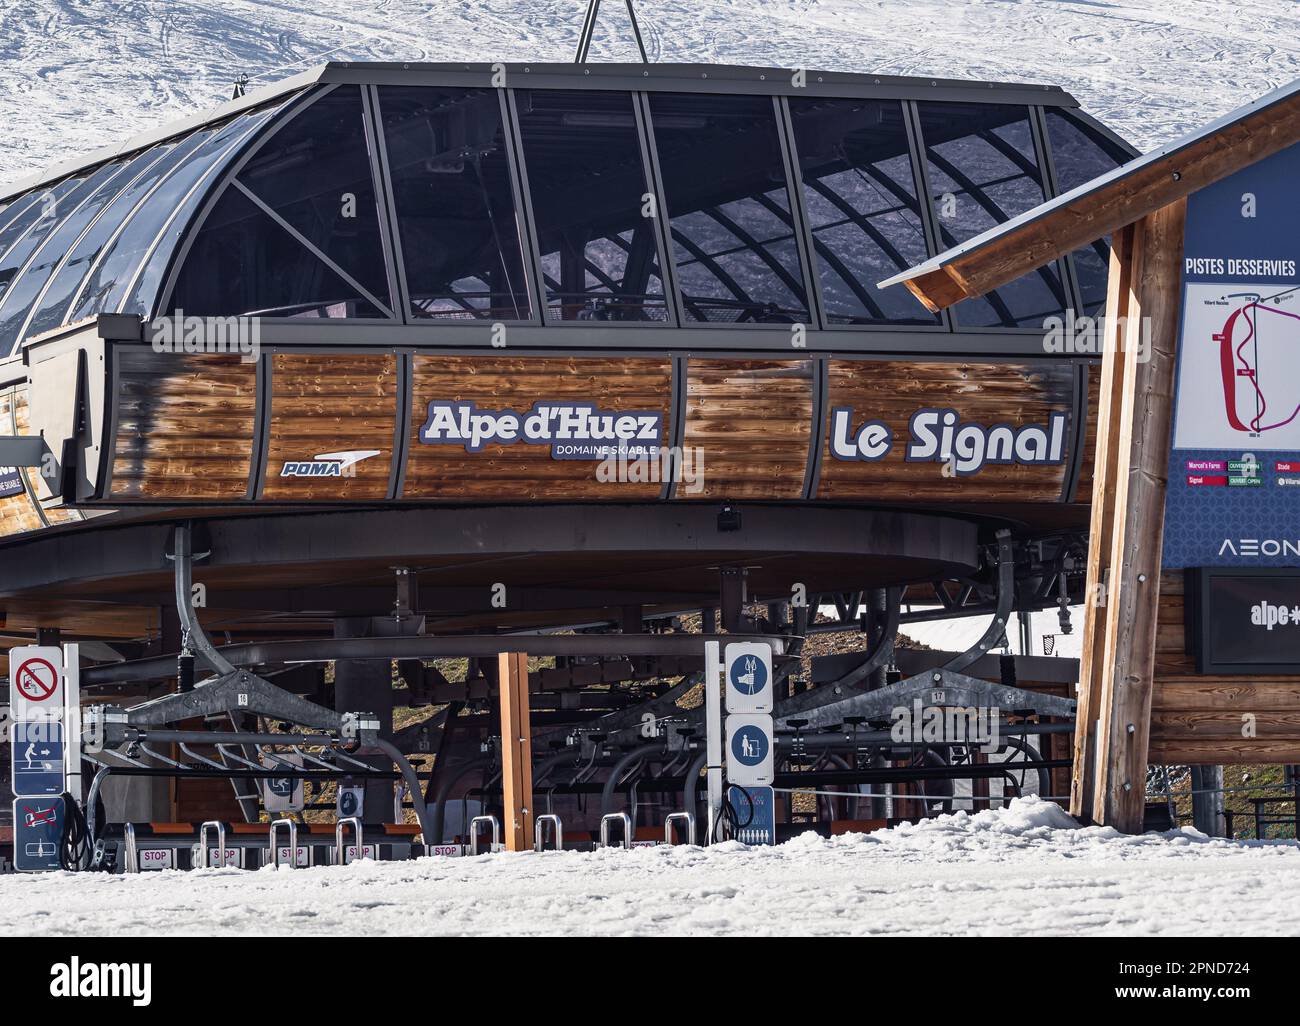 Huez, Frankreich - 9. April 2023: Eines der beliebtesten Skigebiete in den Alpen Frankreichs - Alpe D'Huez - Skilift Le Signal - Skistation, Lift Stockfoto